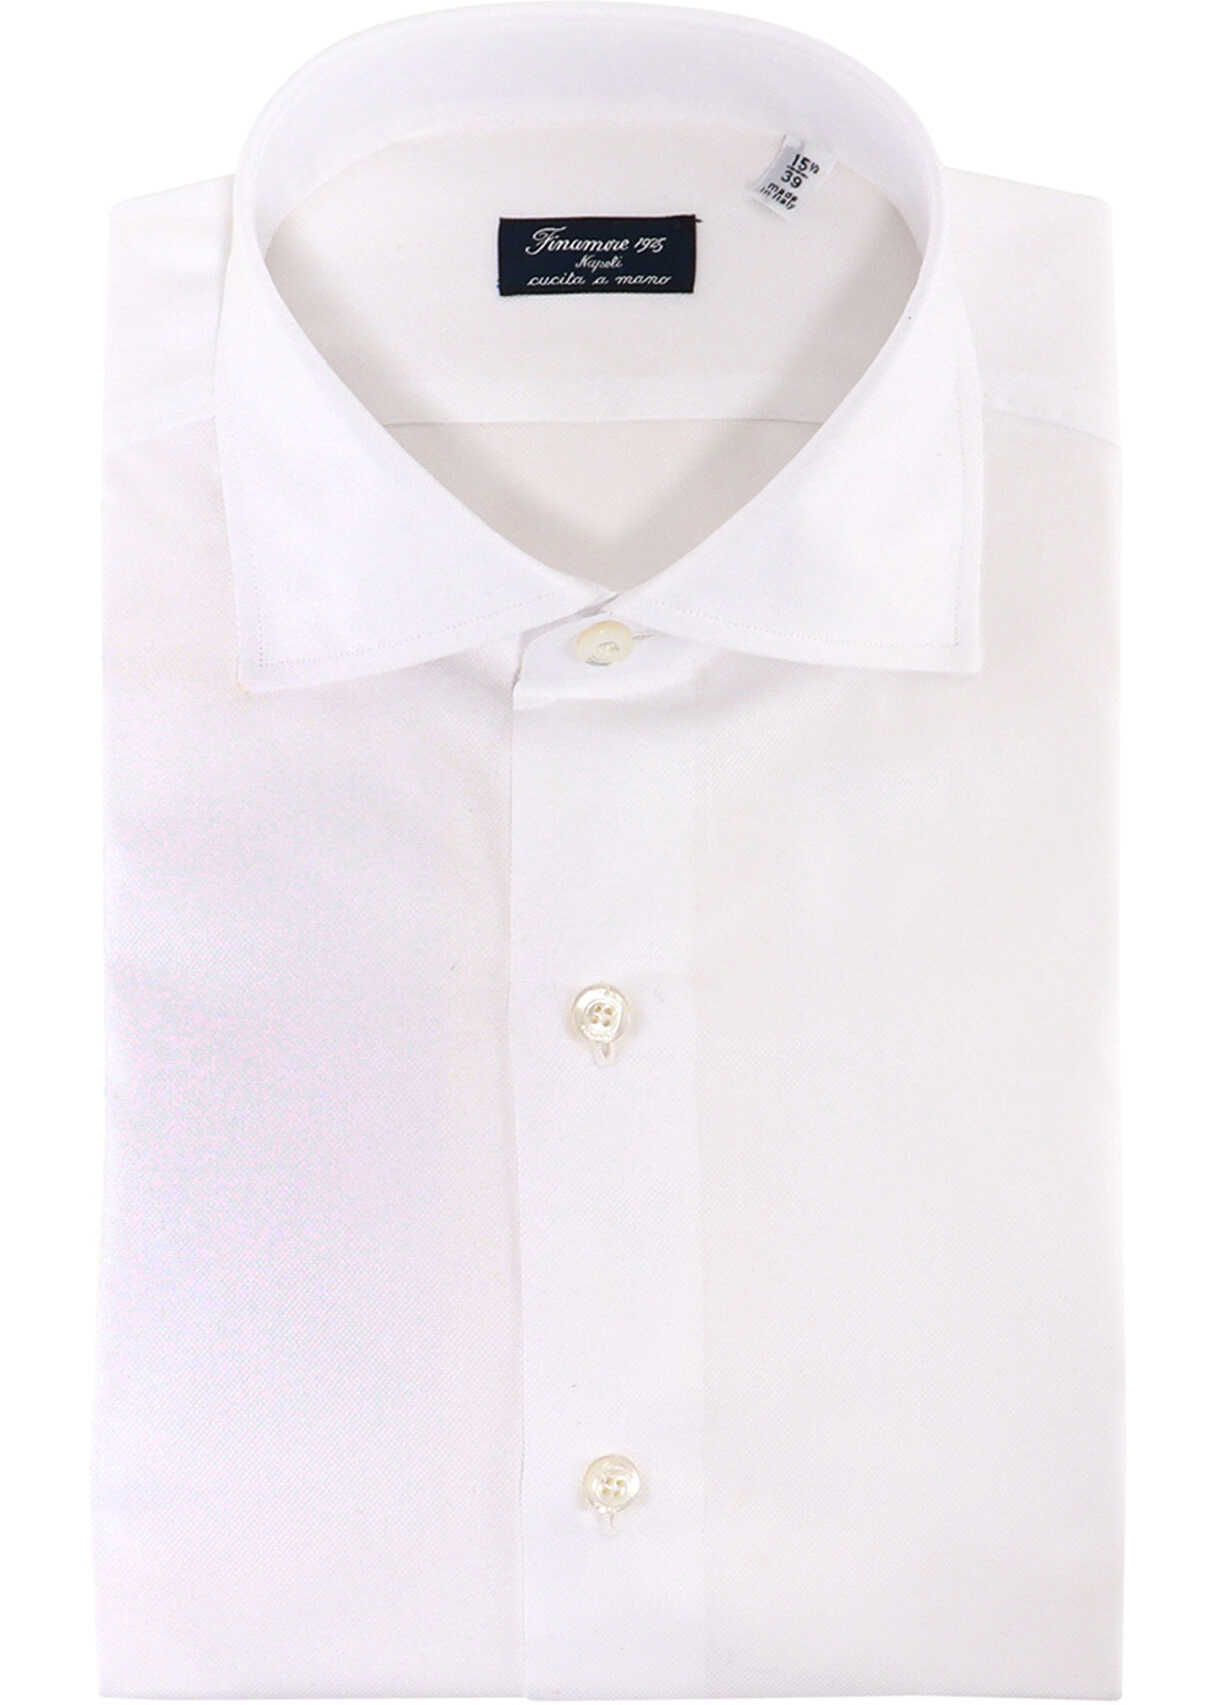 FINAMORE Shirt White